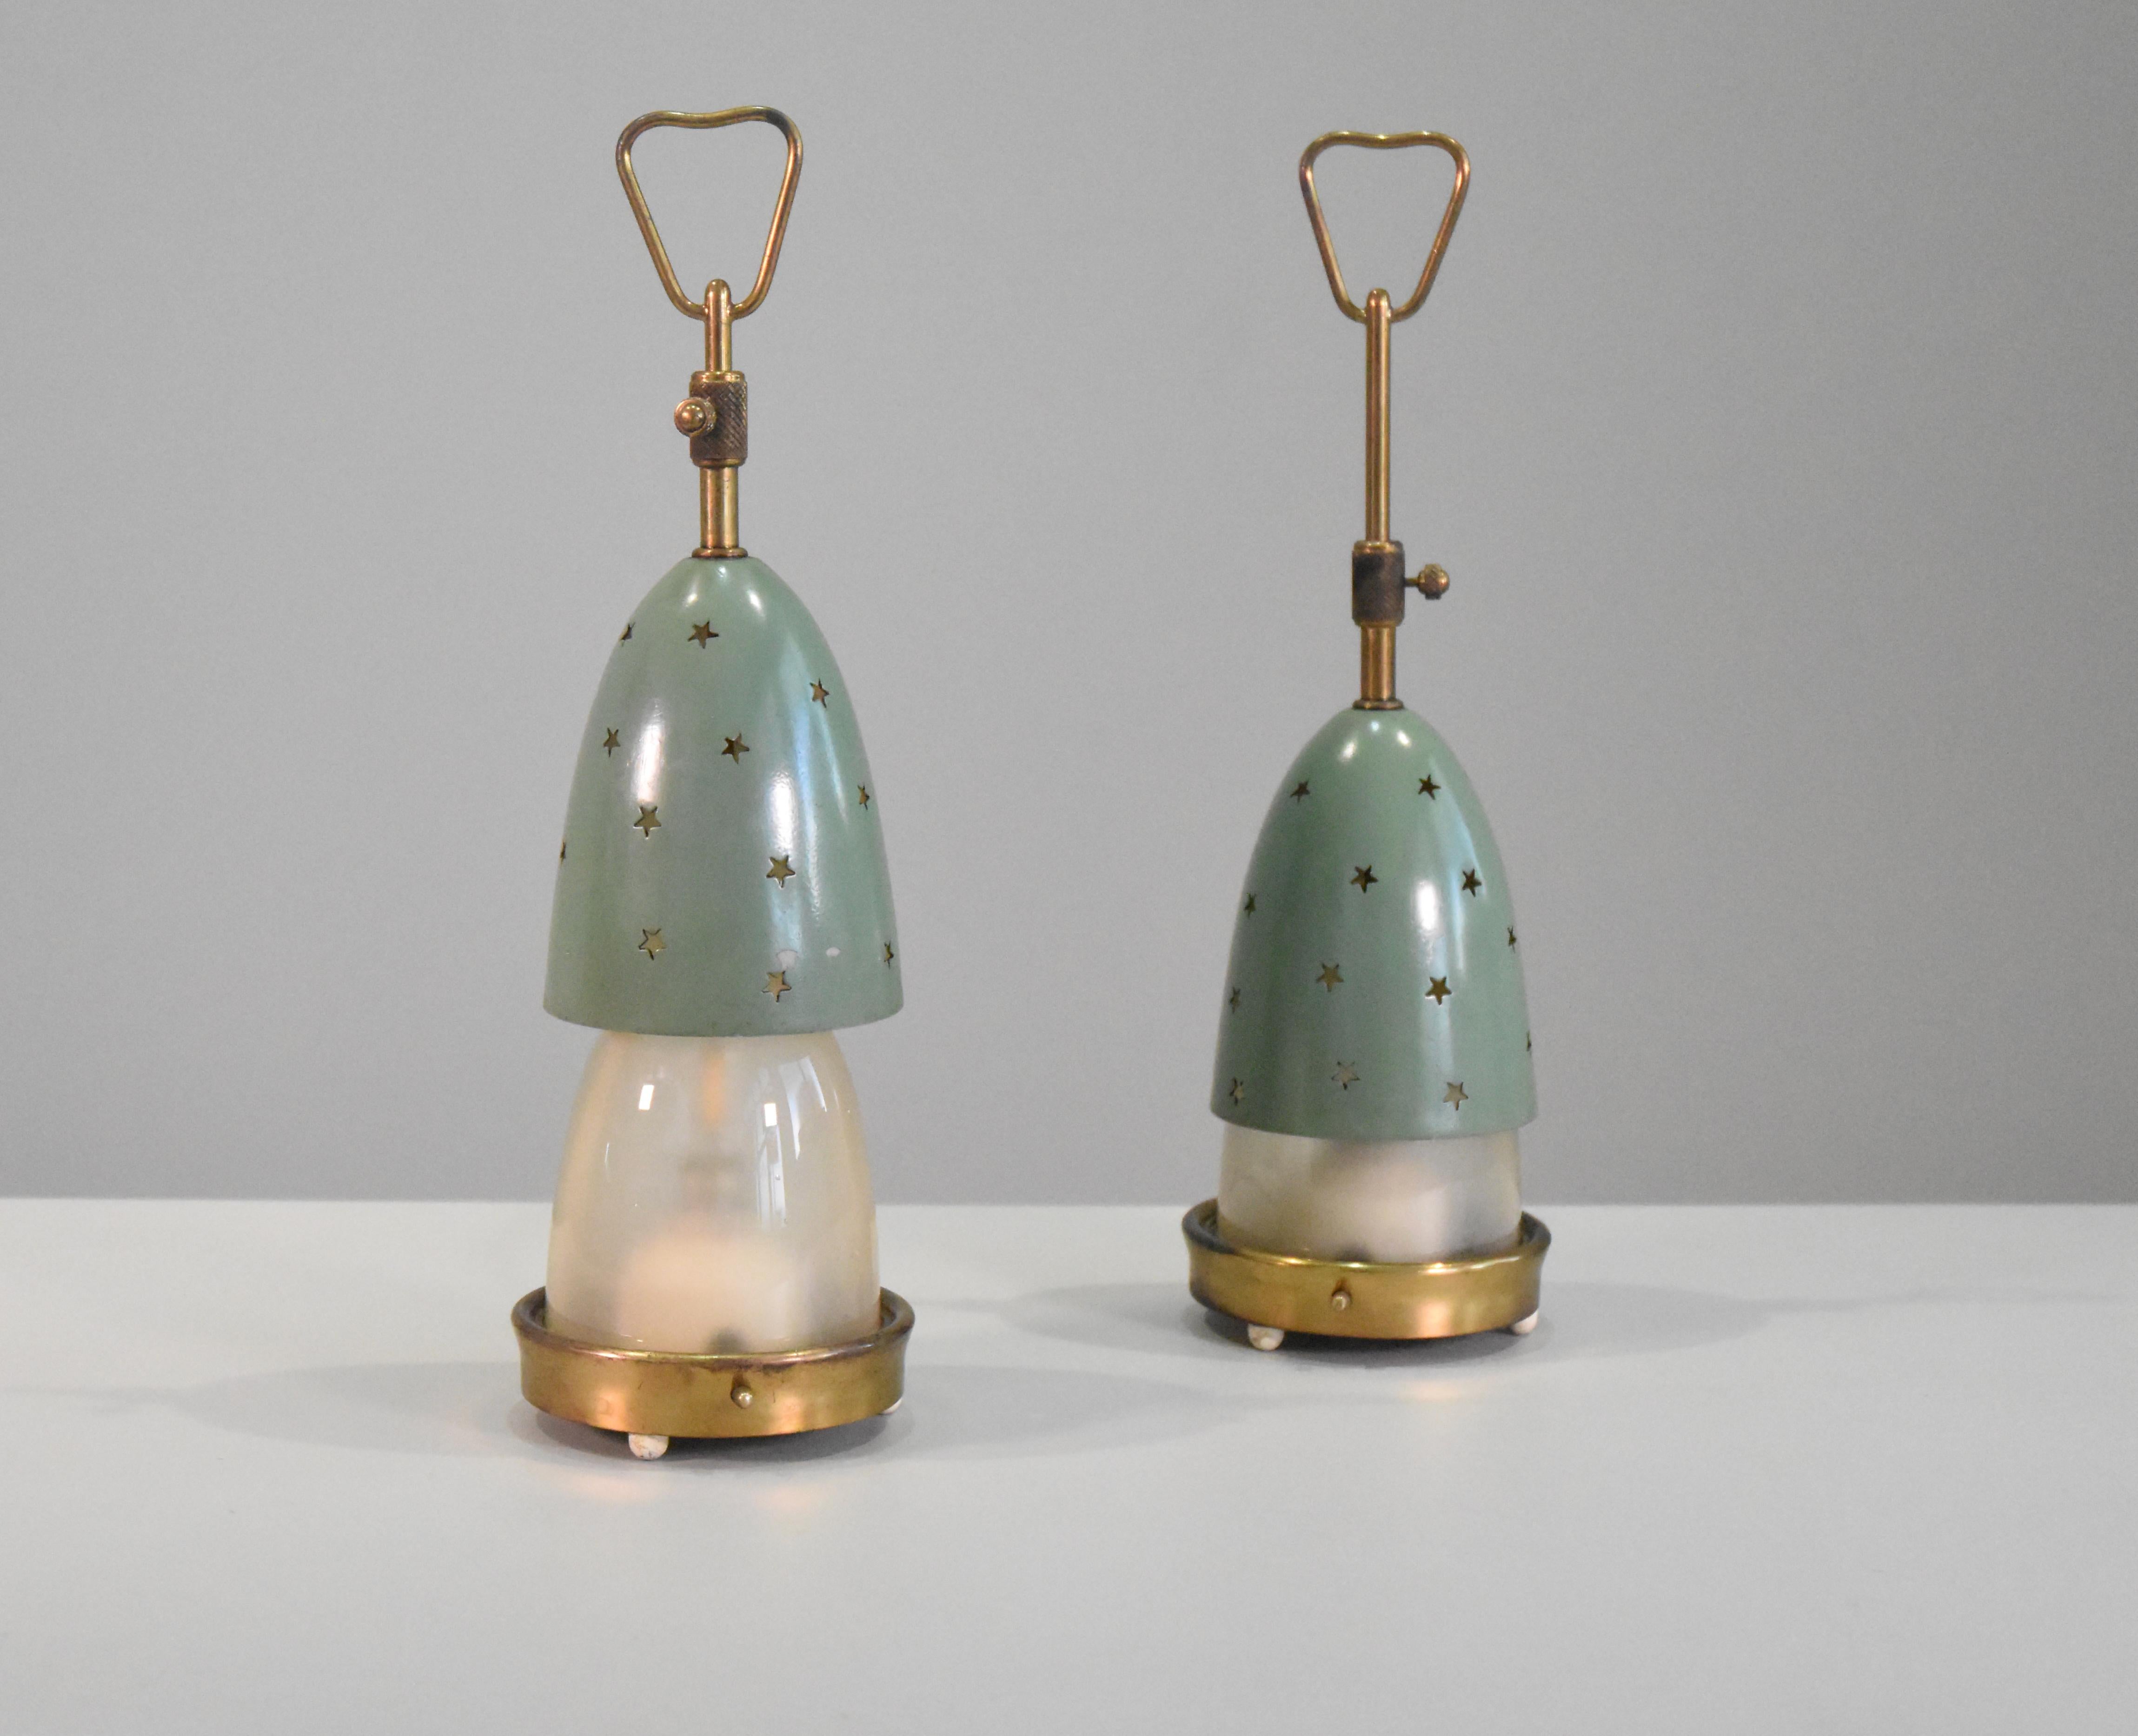 Paire de lampes de table Stelline  modèle 12291 conçu par Angelo Lelii pour Arredoluce, Italie, années 1950. 
Les lampes ont un cadre en laiton et un double abat-jour en verre opalin dépoli et en métal. 
L'ombre extérieure est ornée d'un motif